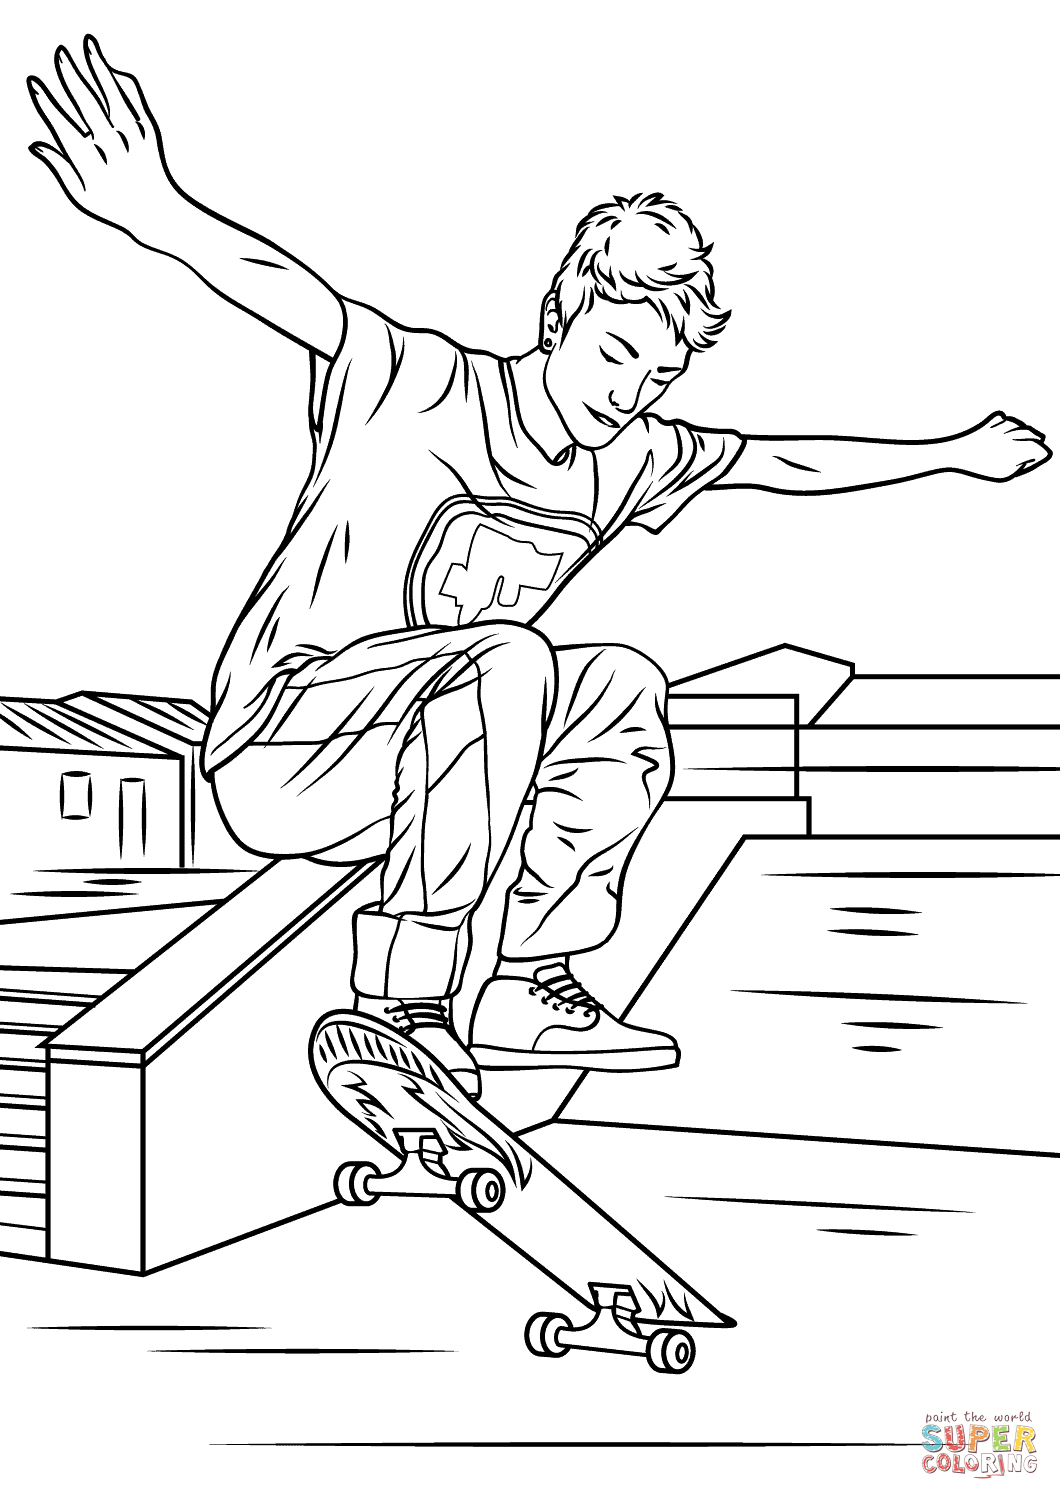 Рисунок скейтера